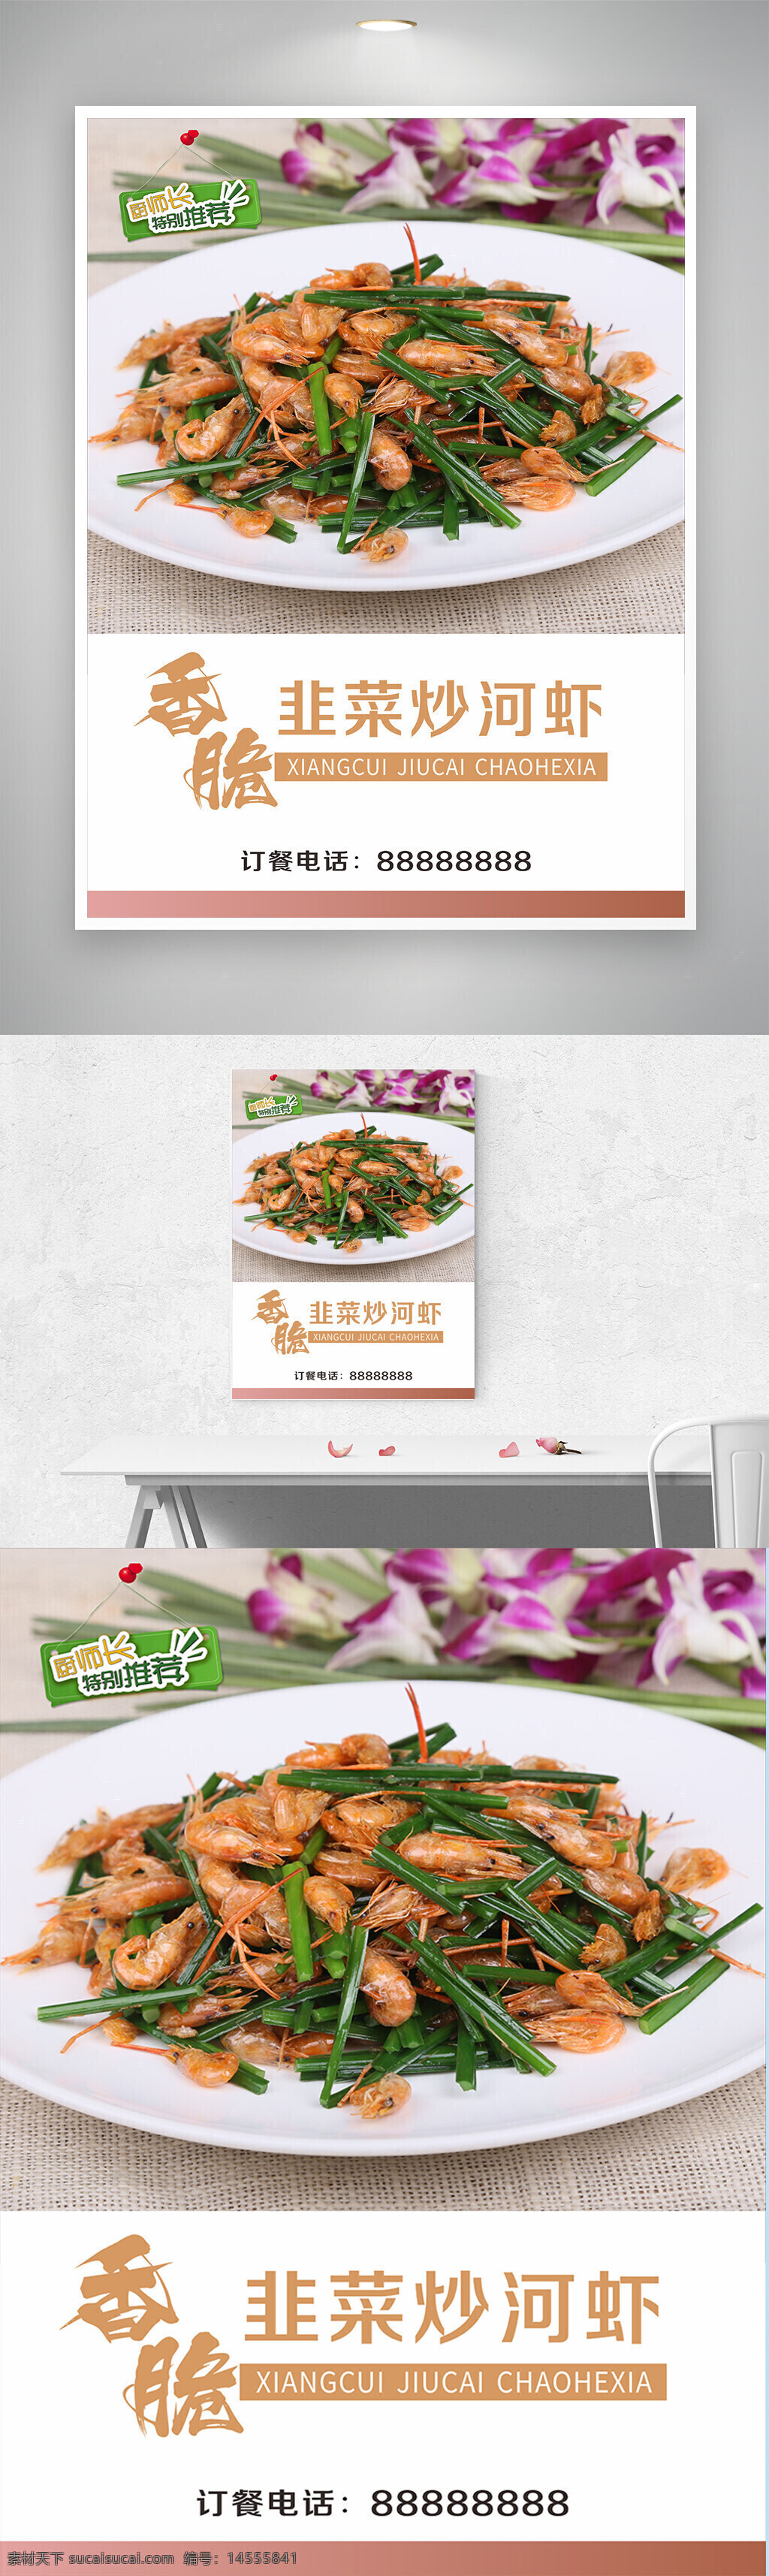 香脆韭菜炒河虾海报 中国特色美食 韭菜 河虾 新菜上市 新品上市